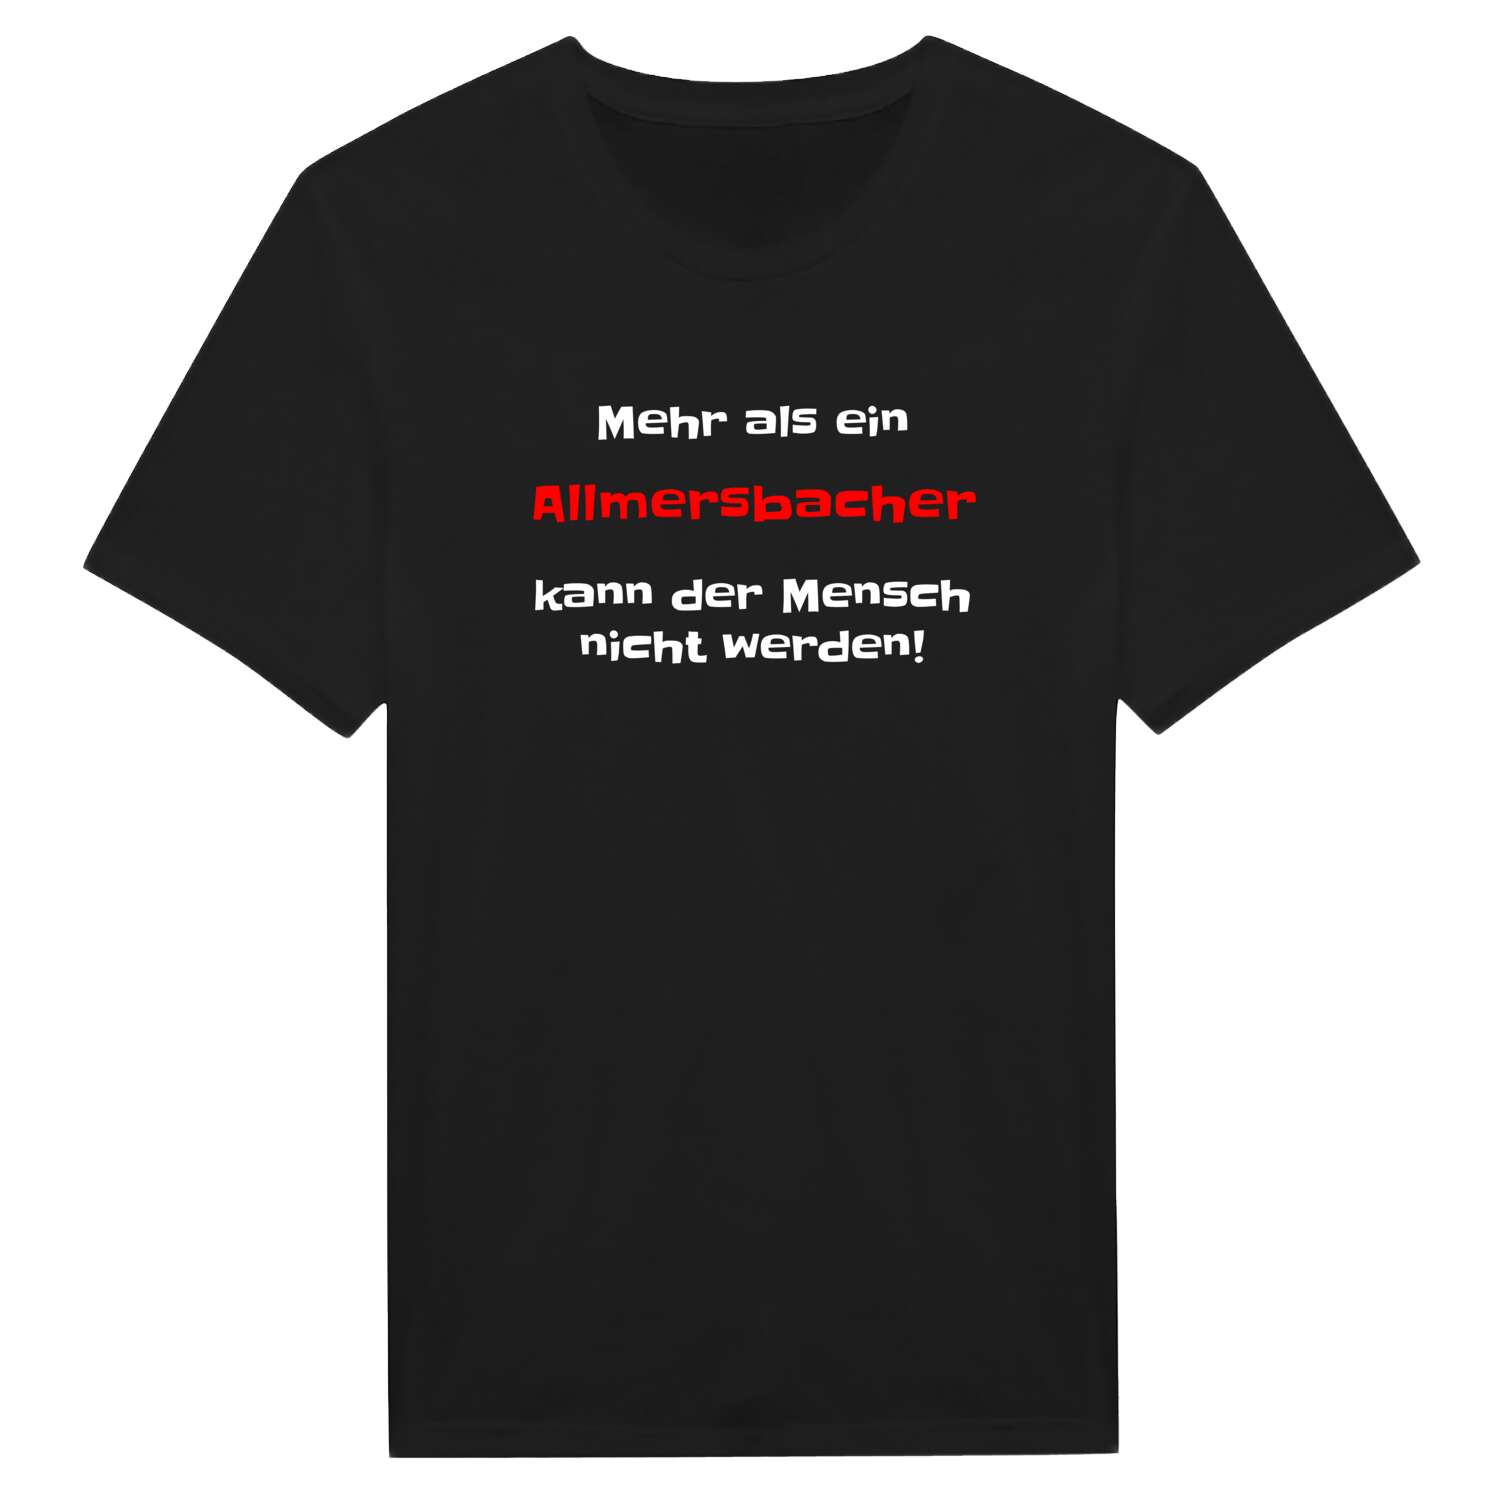 Allmersbach T-Shirt »Mehr als ein«